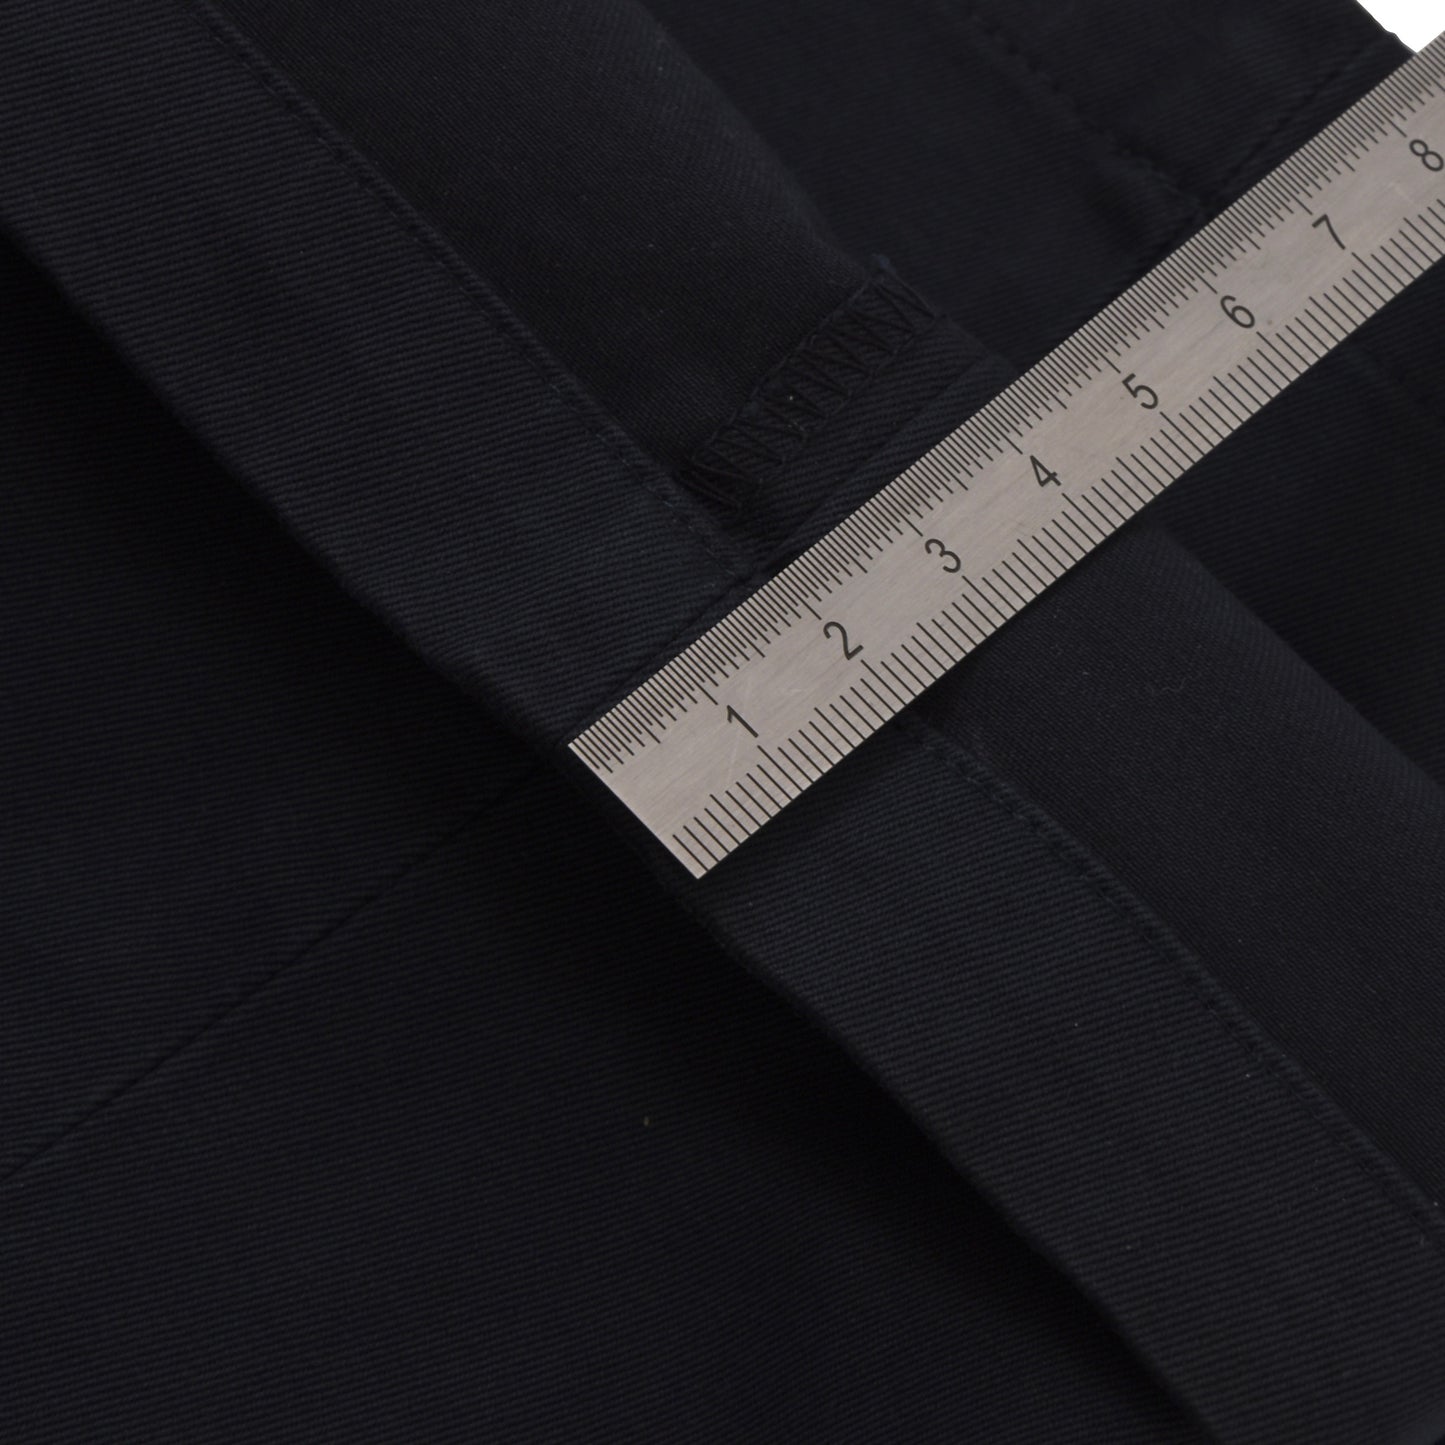 Boglioli Cotton Suit Size 54/56 - Navy Blue